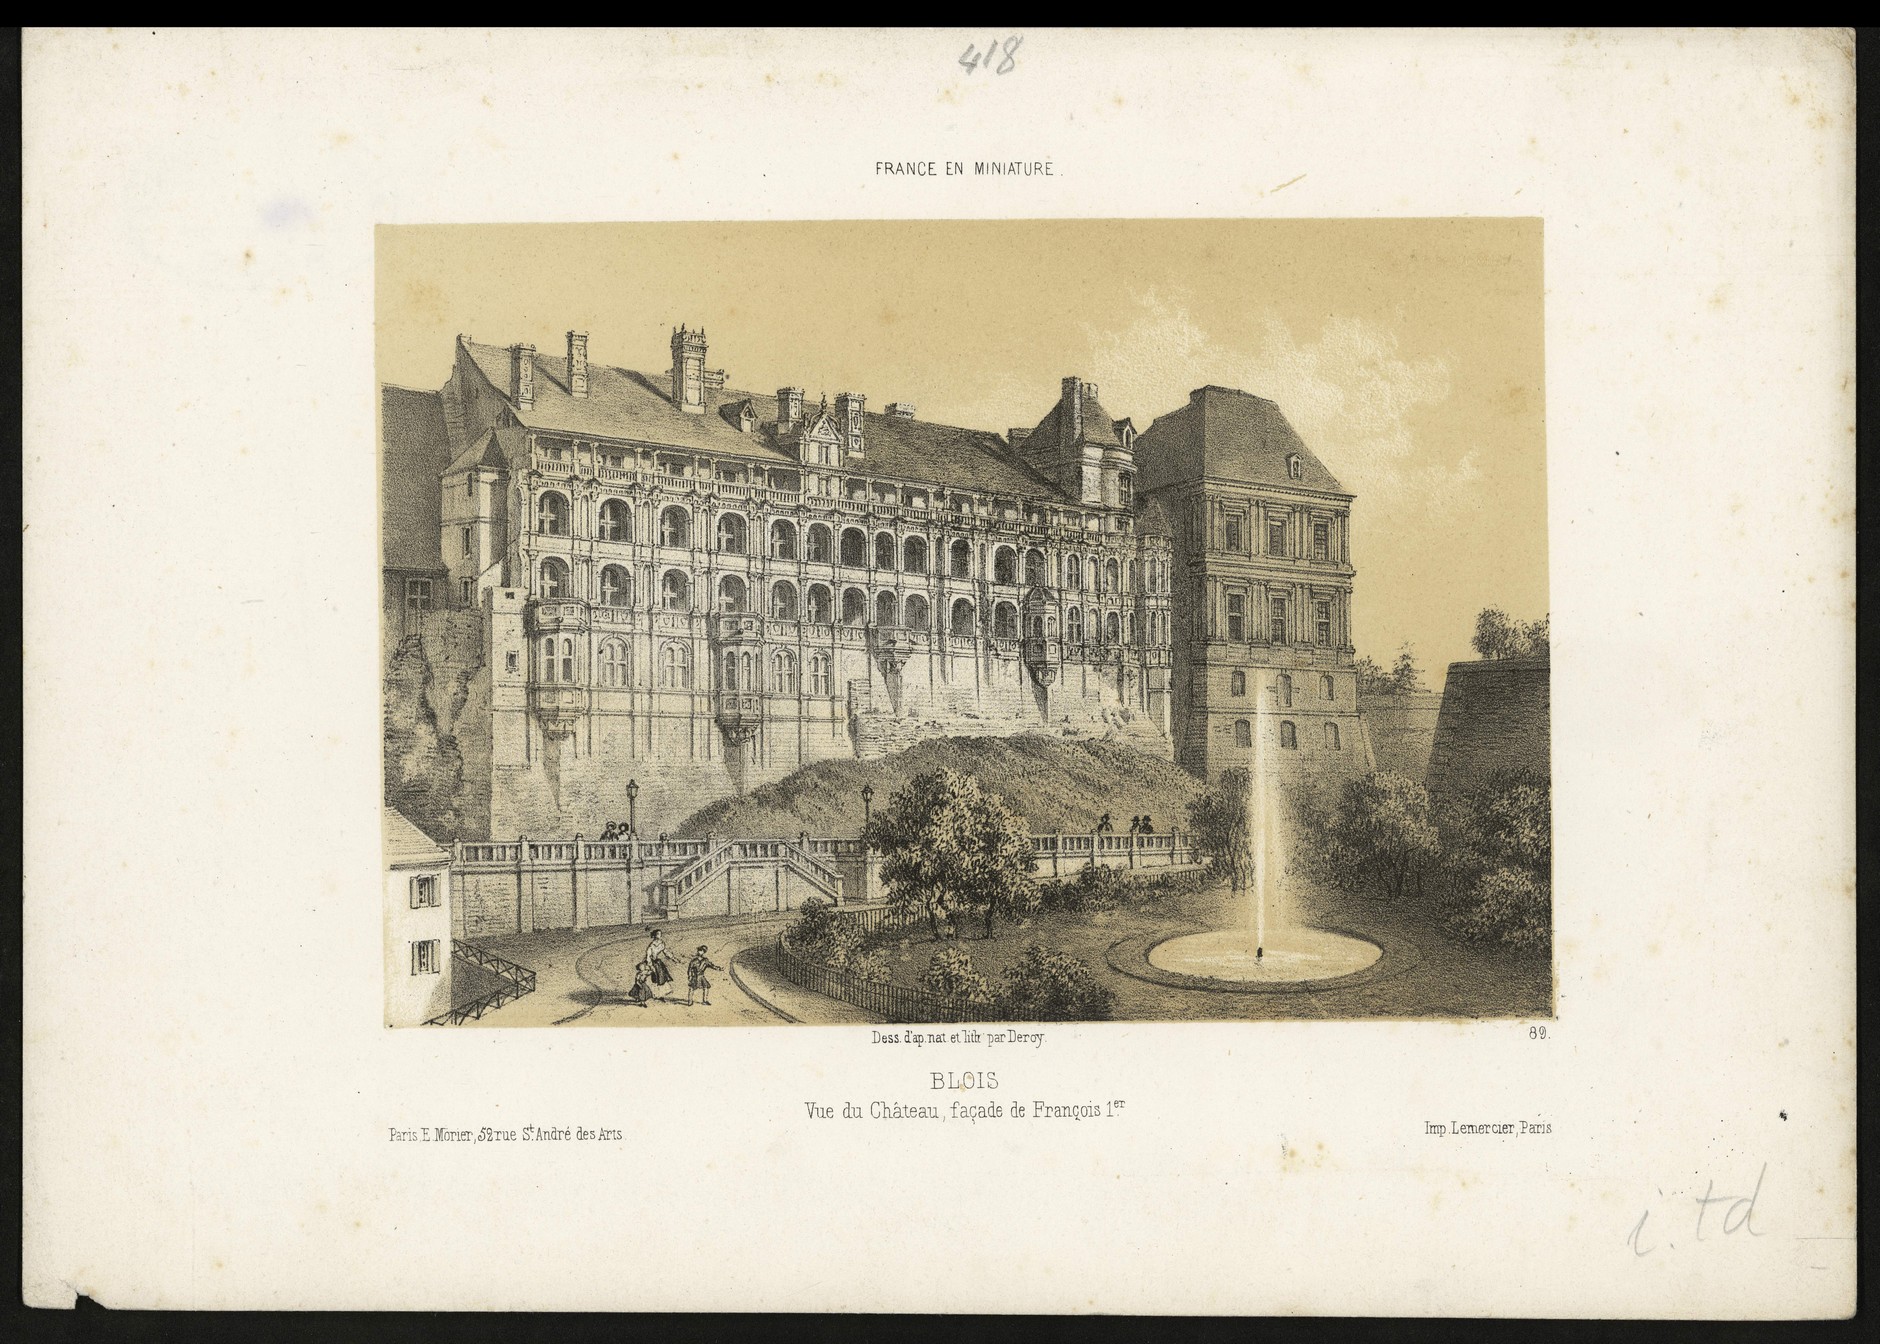 Deroy, Vue du château de Blois, façade François Ier, lithographie vers 1852